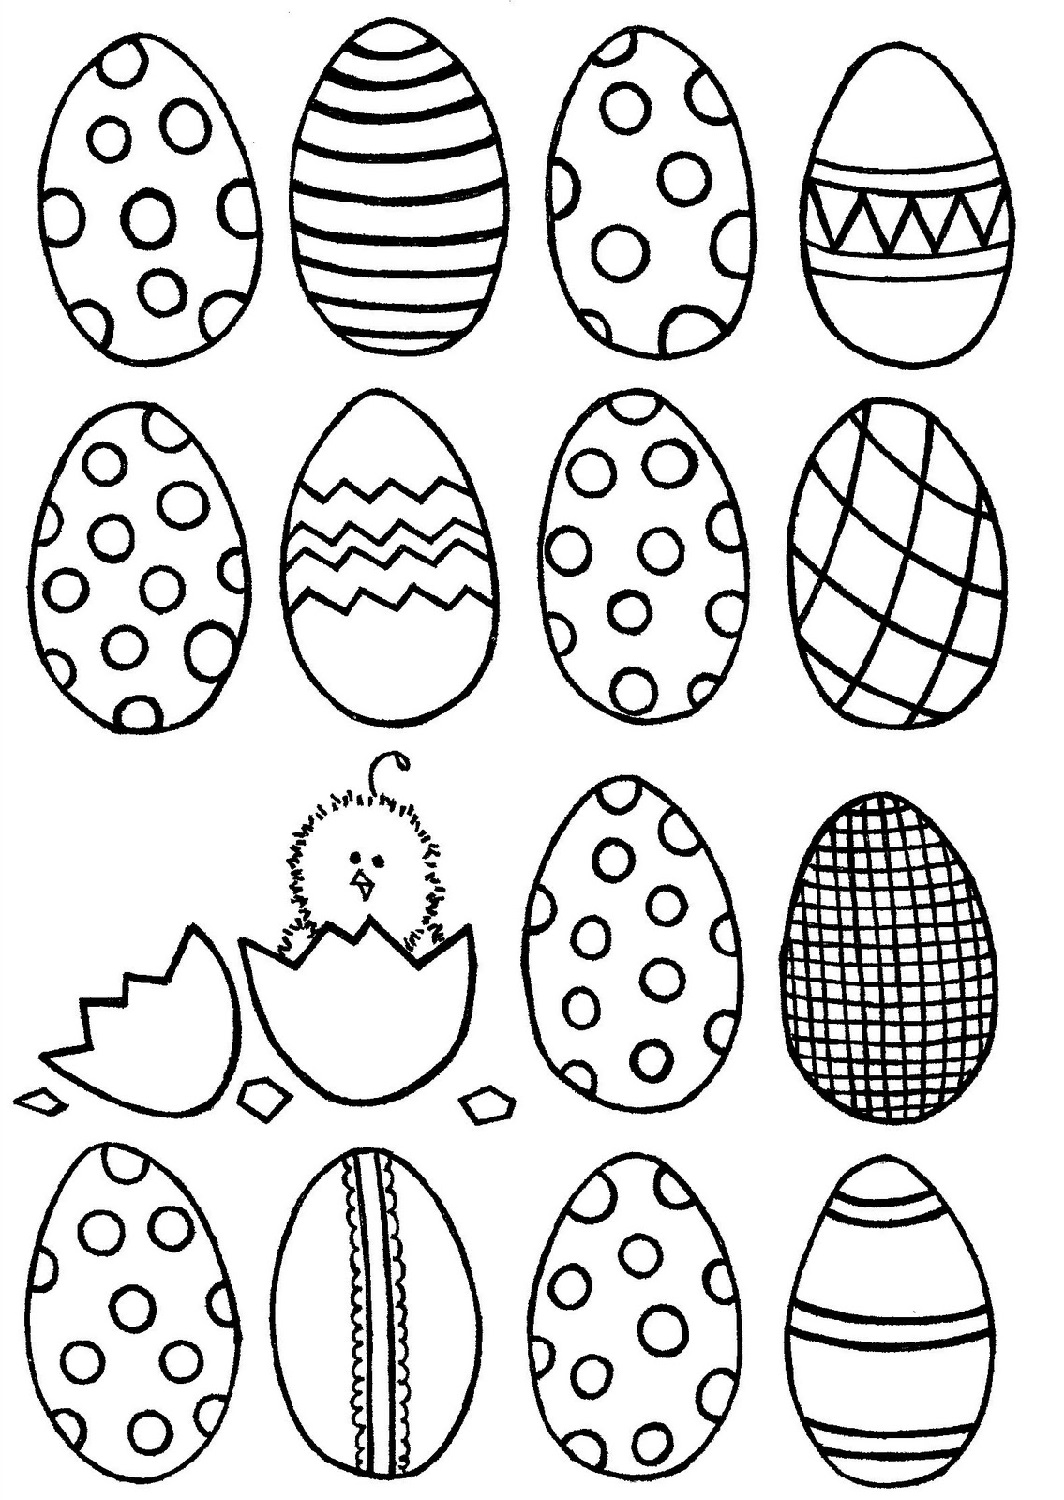 Free Easter Egg Template Printable Printable Templates